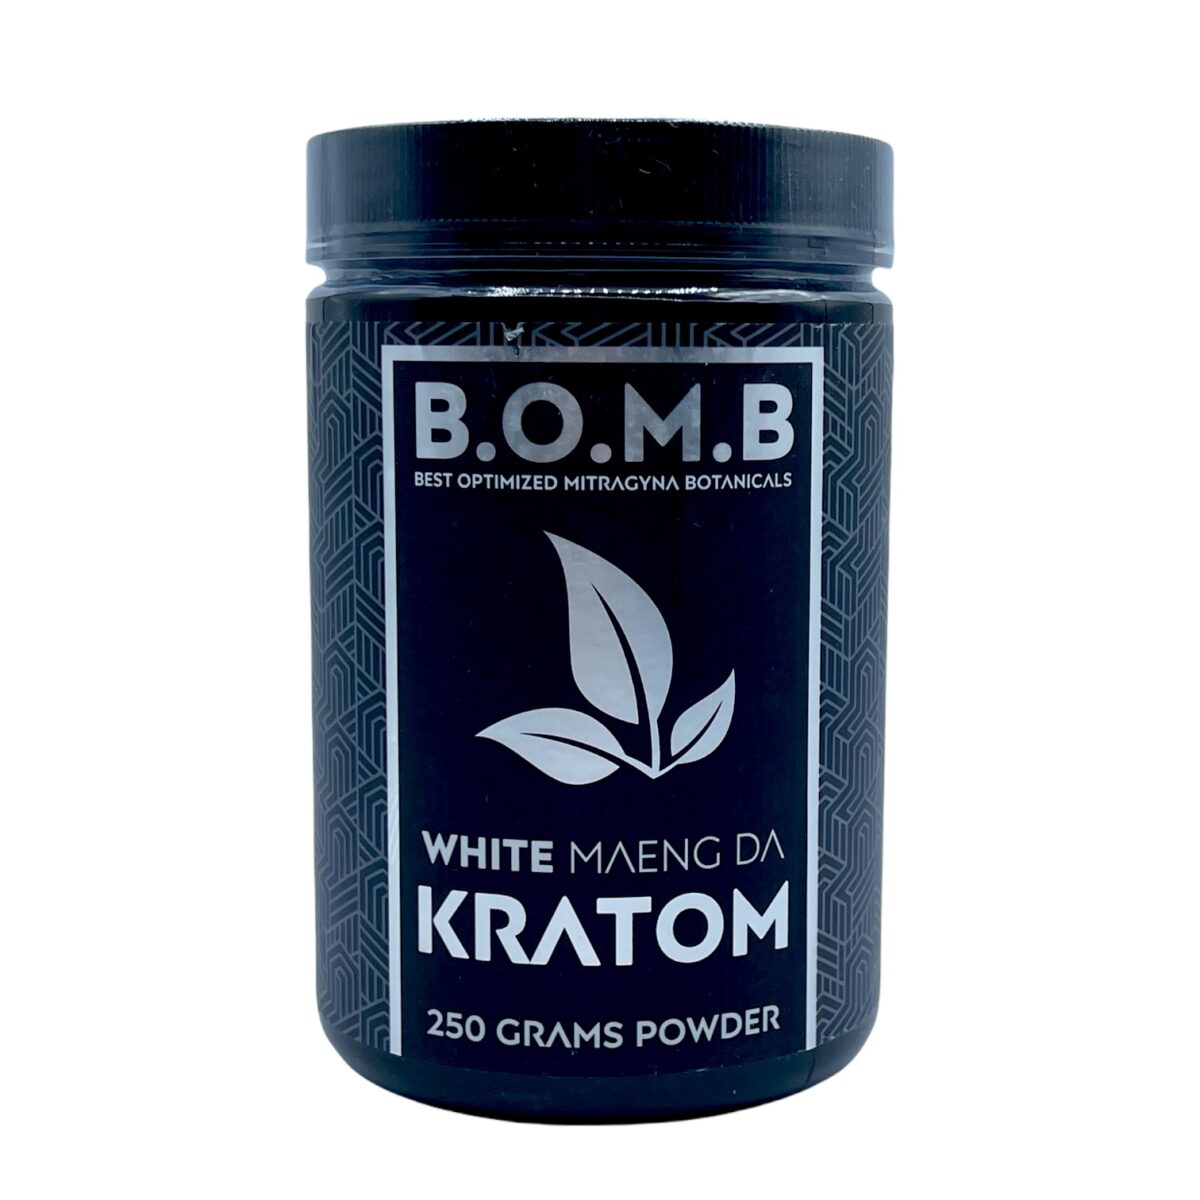 BOMB White Maeng Da Kratom Powder